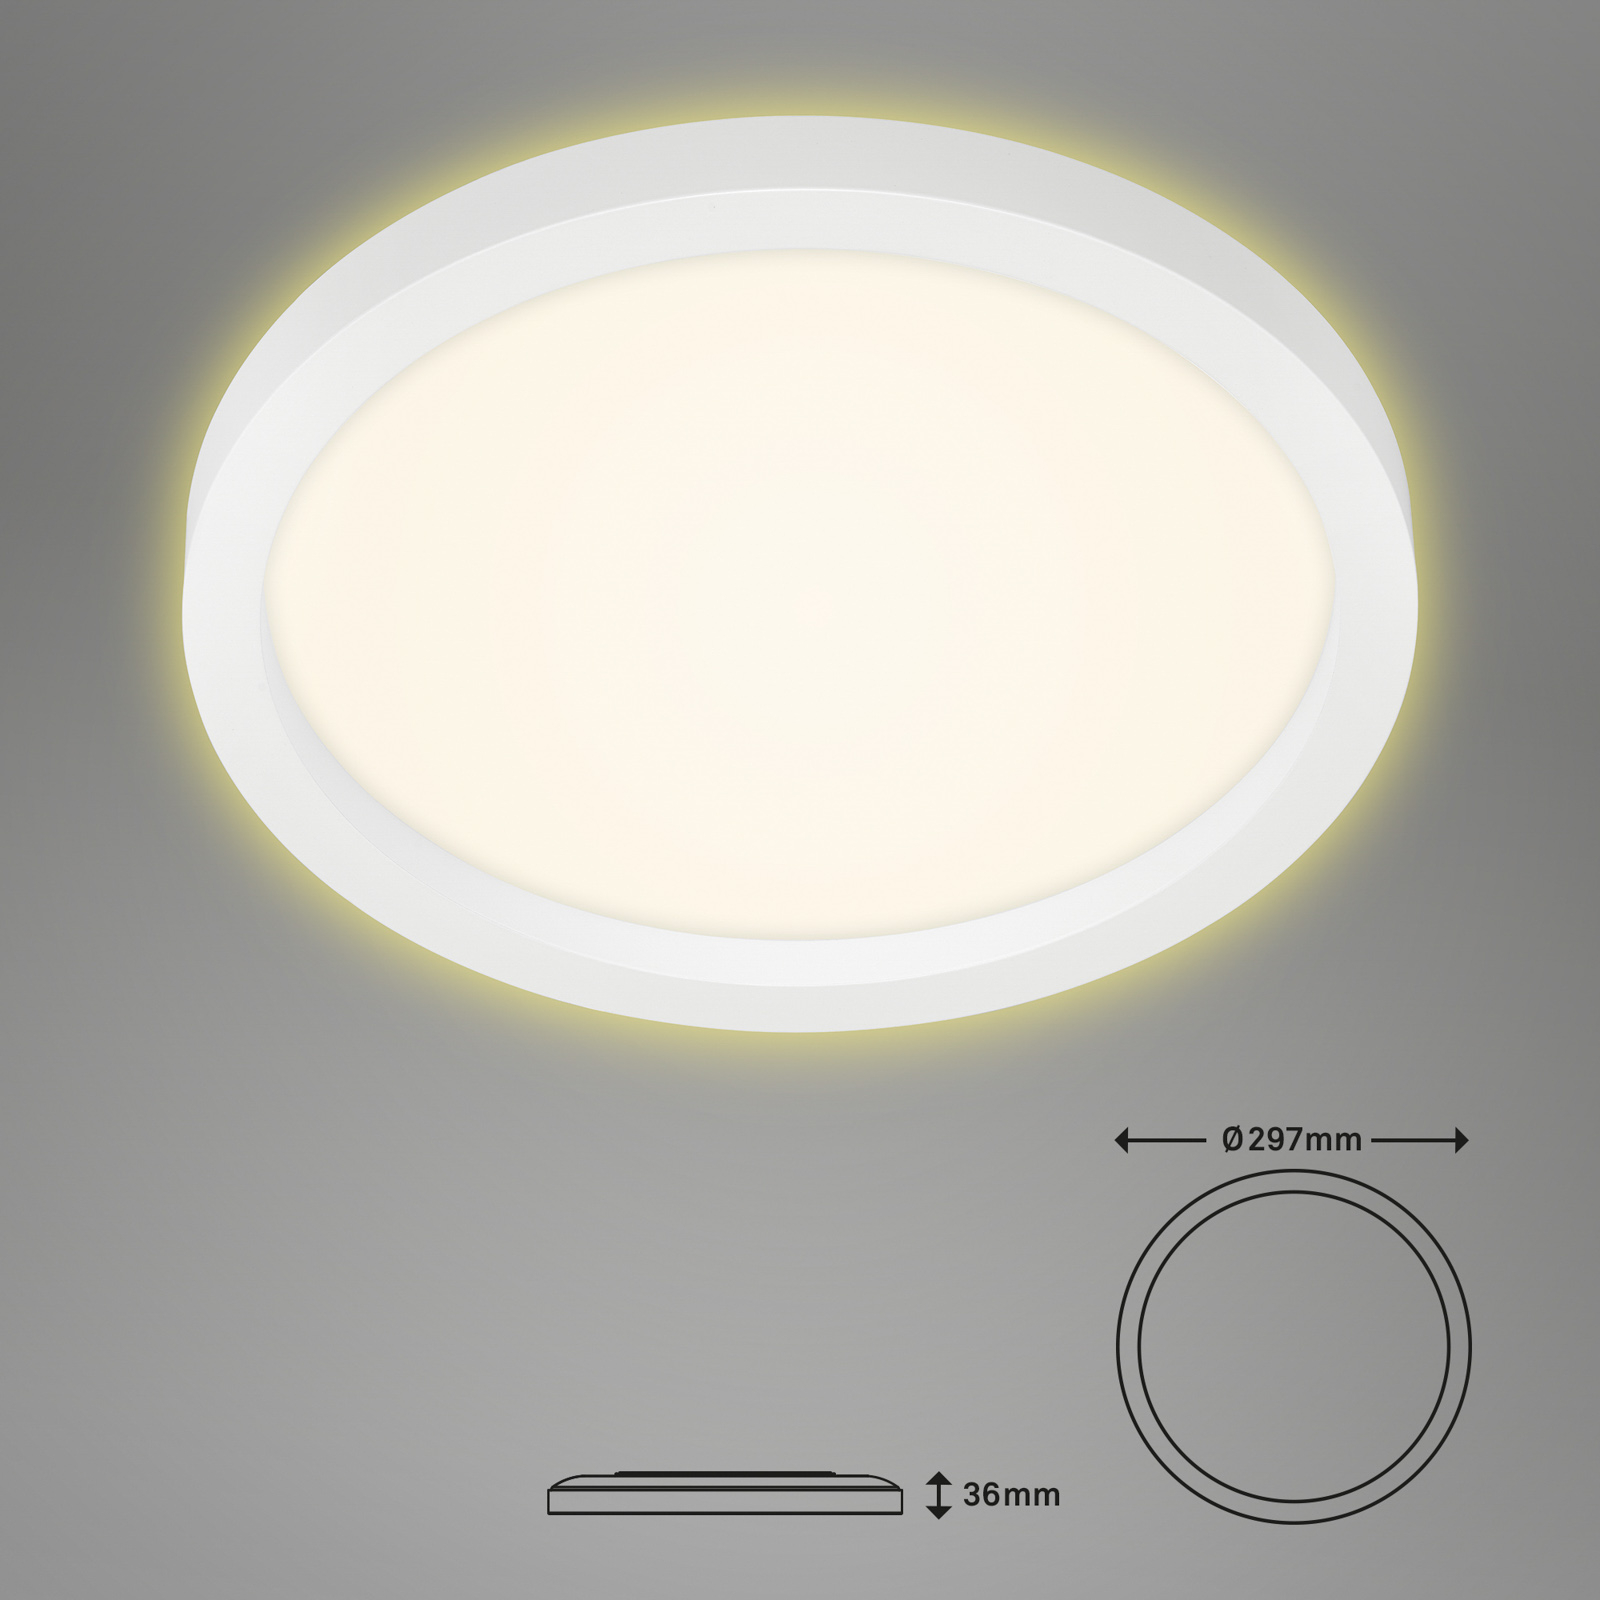 LED-Deckenlampe 7361, Ø 29 cm, weiß